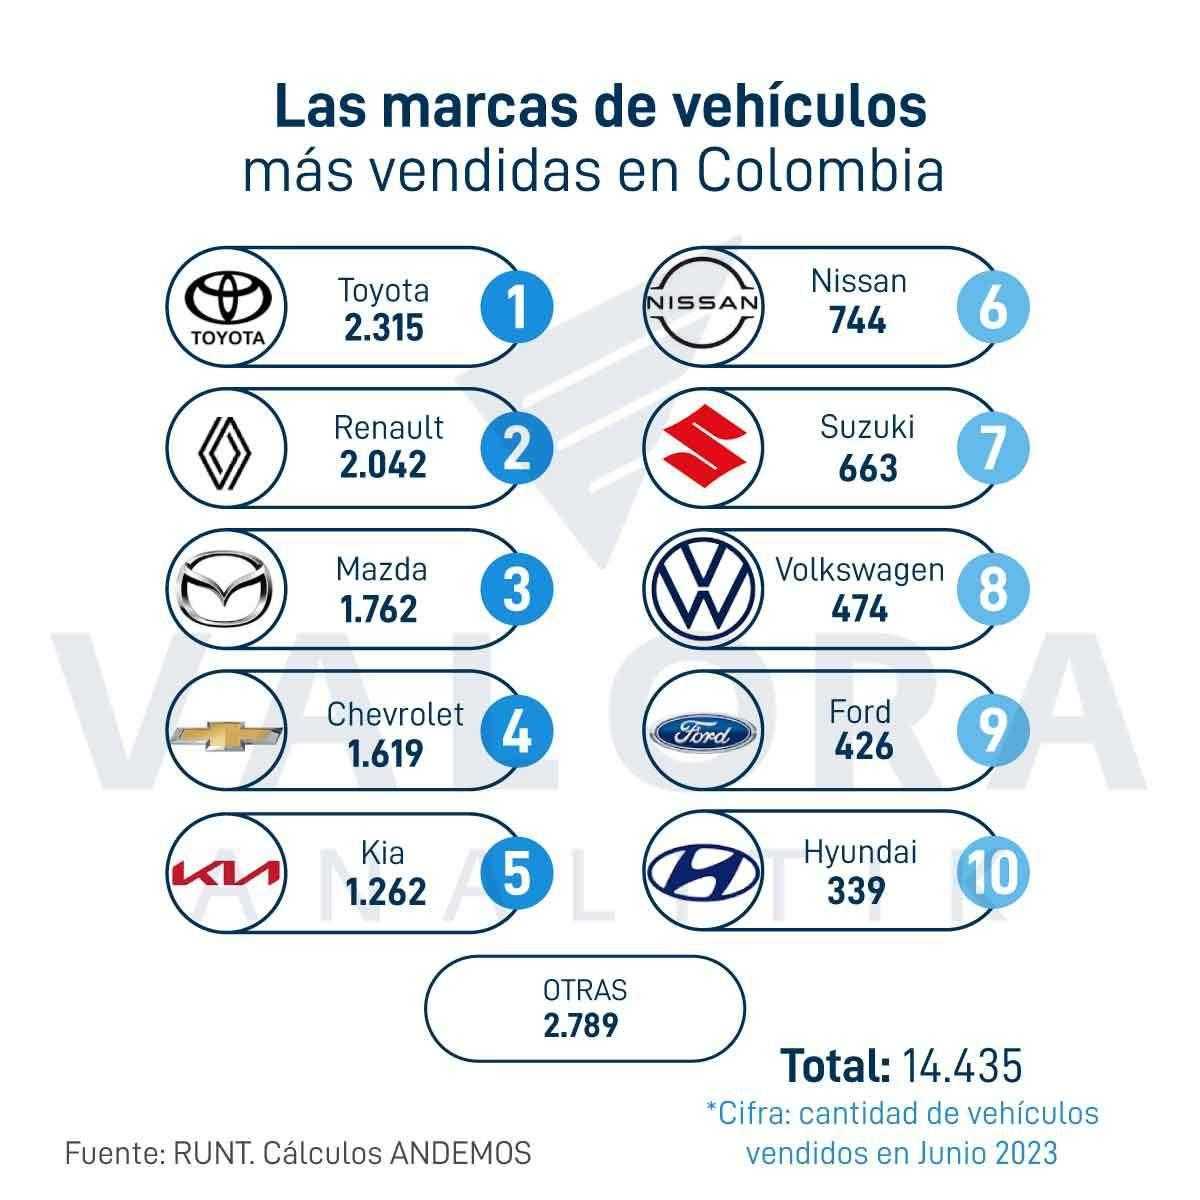 Las marcas de vehículos más vendidas en Colombia